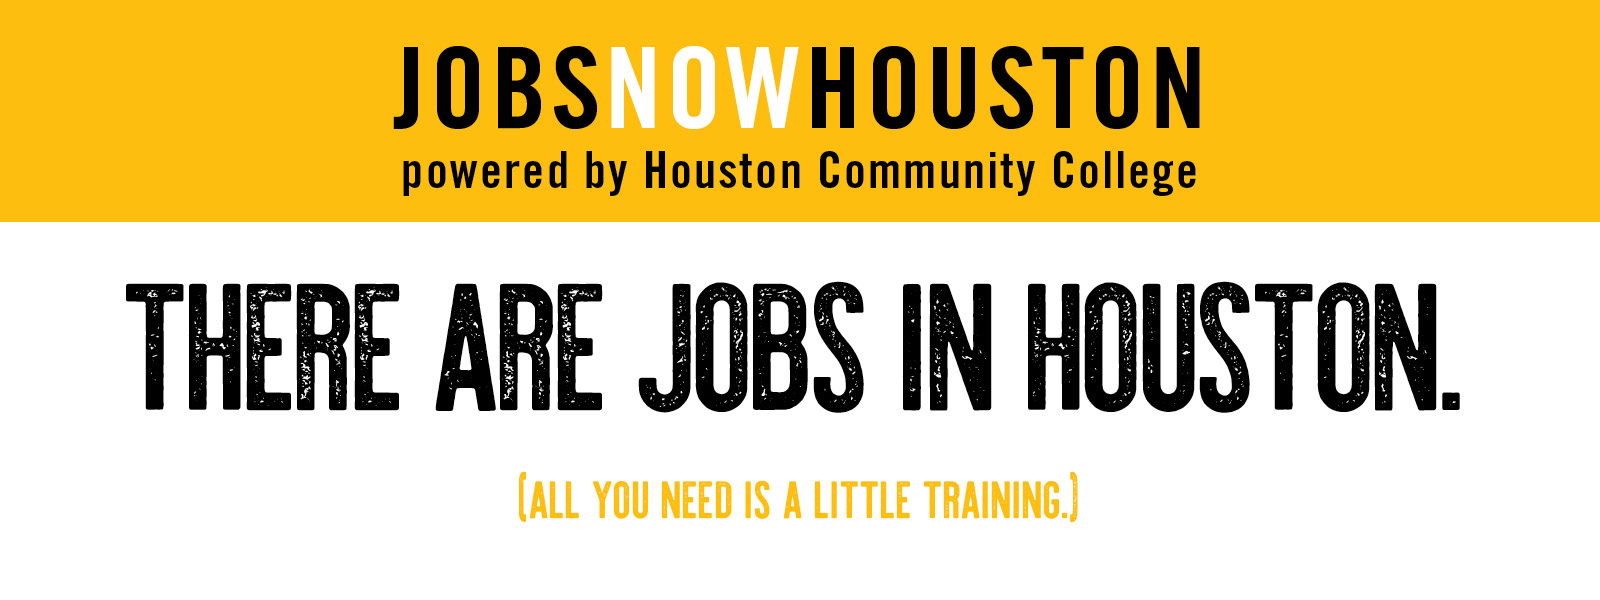 Jobs Now Houston Houston Community College Hcc